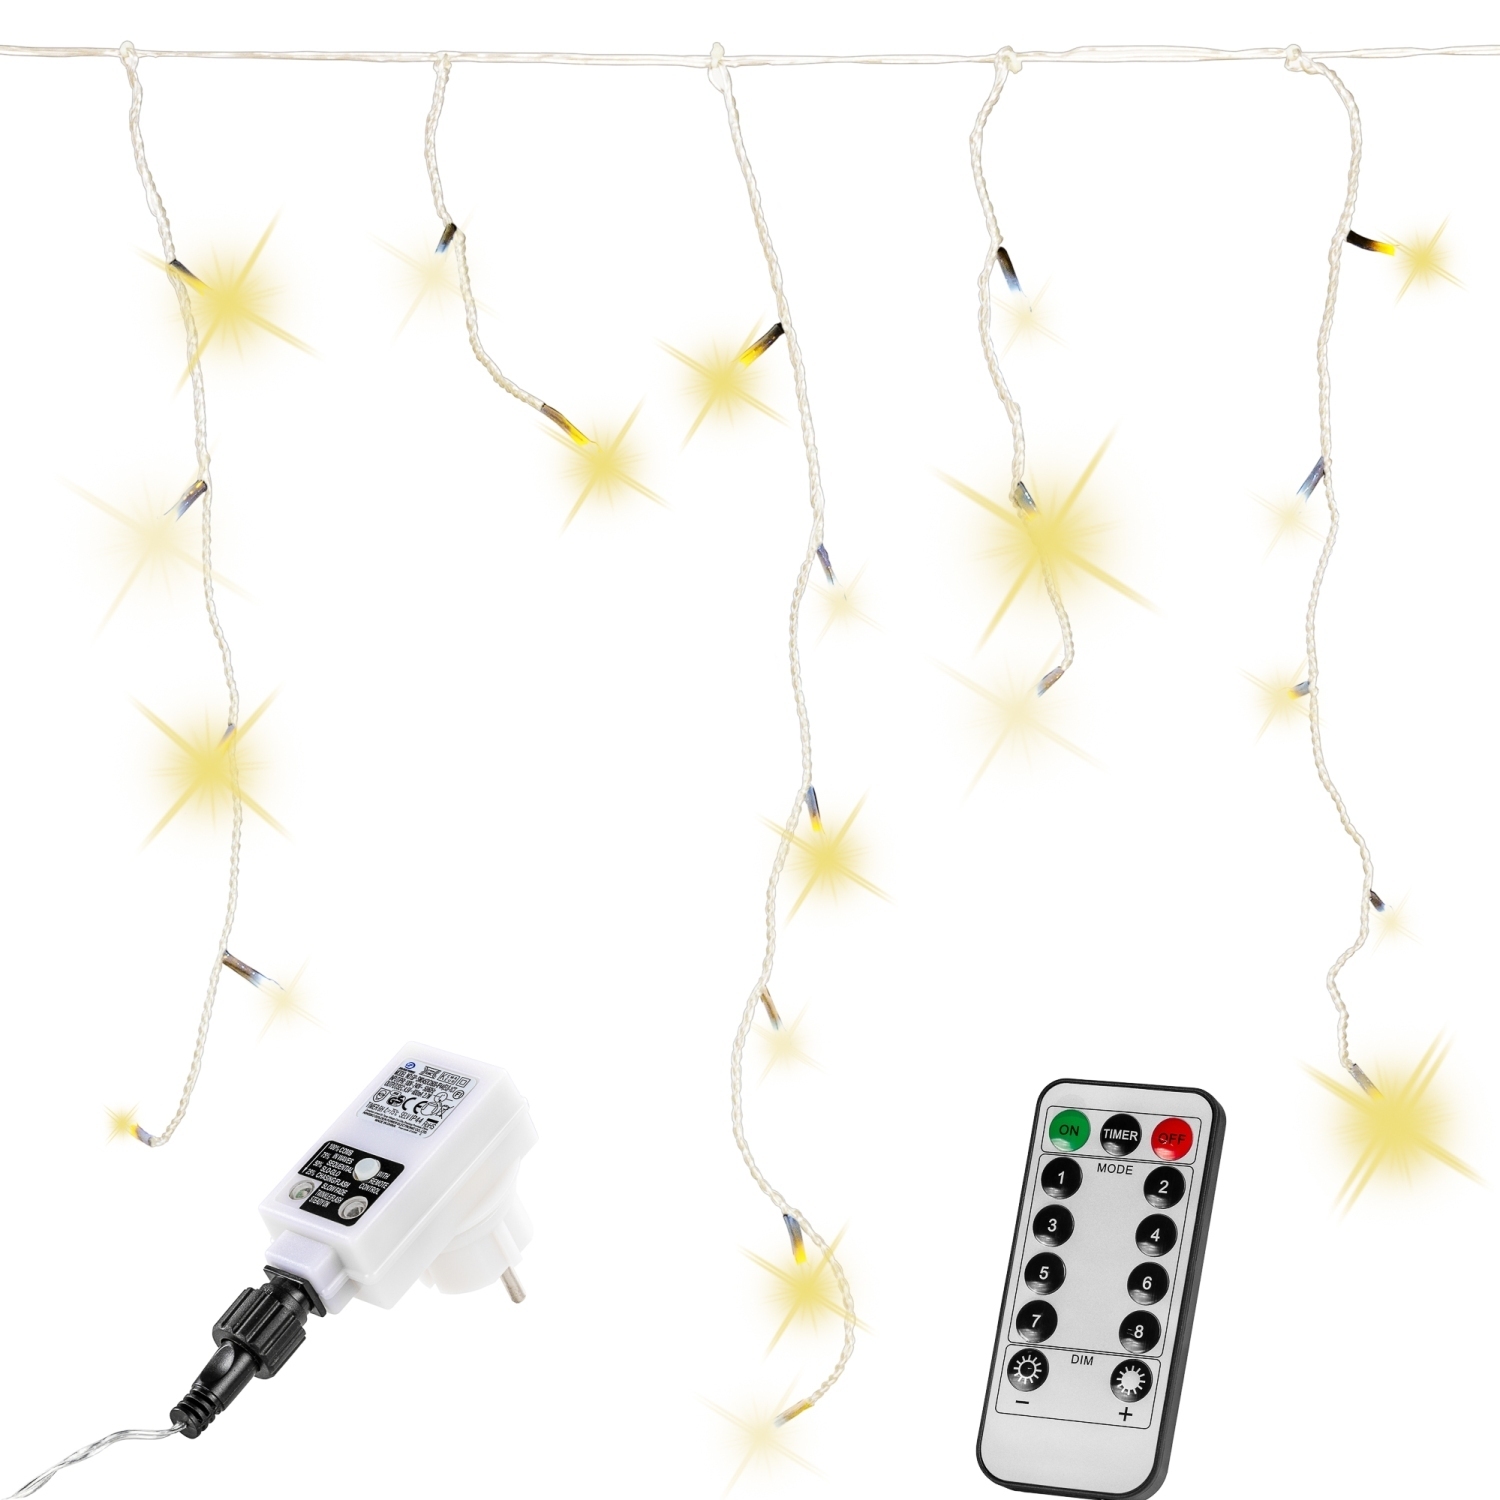 Lichtgordijn – Ijspegelverlichting – Kerstverlichting Gordijn – LED Gordijn – Kerstverlichting – Kerstversiering – Lichtsnoer – Regenlichtketting – Voor Binnen en Buiten – Met afstandsbediening – 20 m – Warm wit